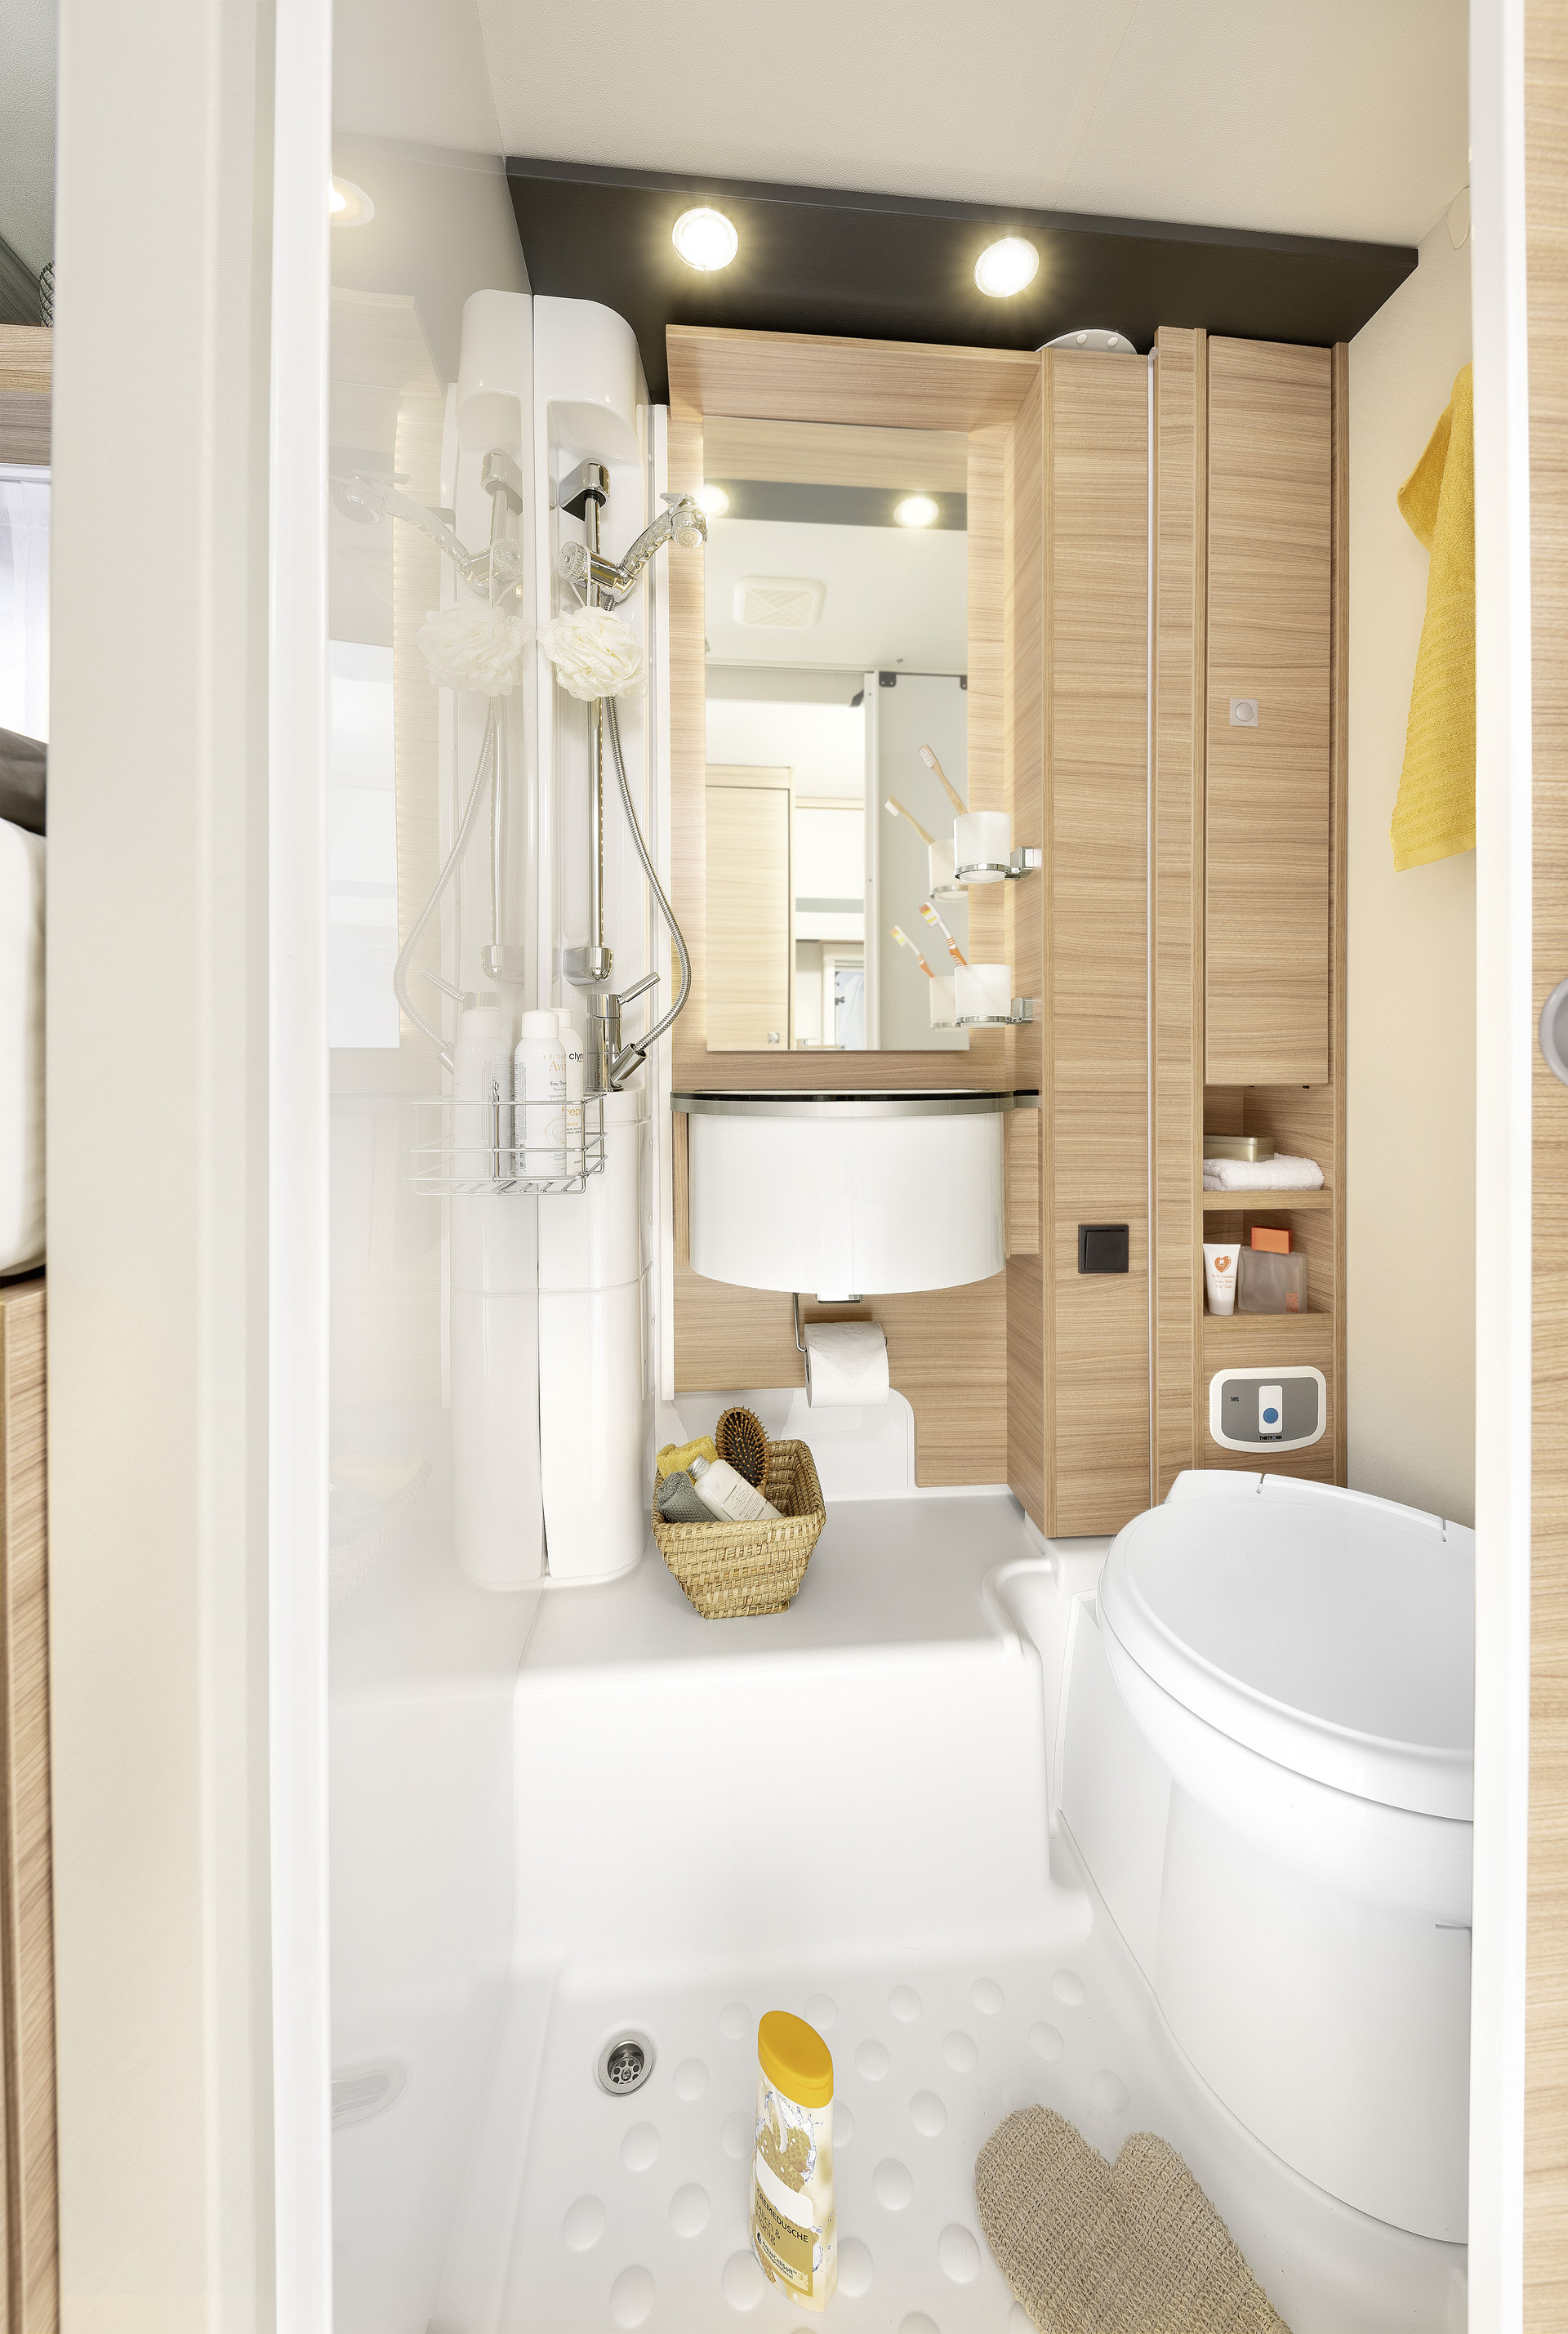 La T/I 6 dispone de una amplia cabina de ducha separada, un lavamanos de fácil acceso y mucho espacio de almacenamiento • T/I 6